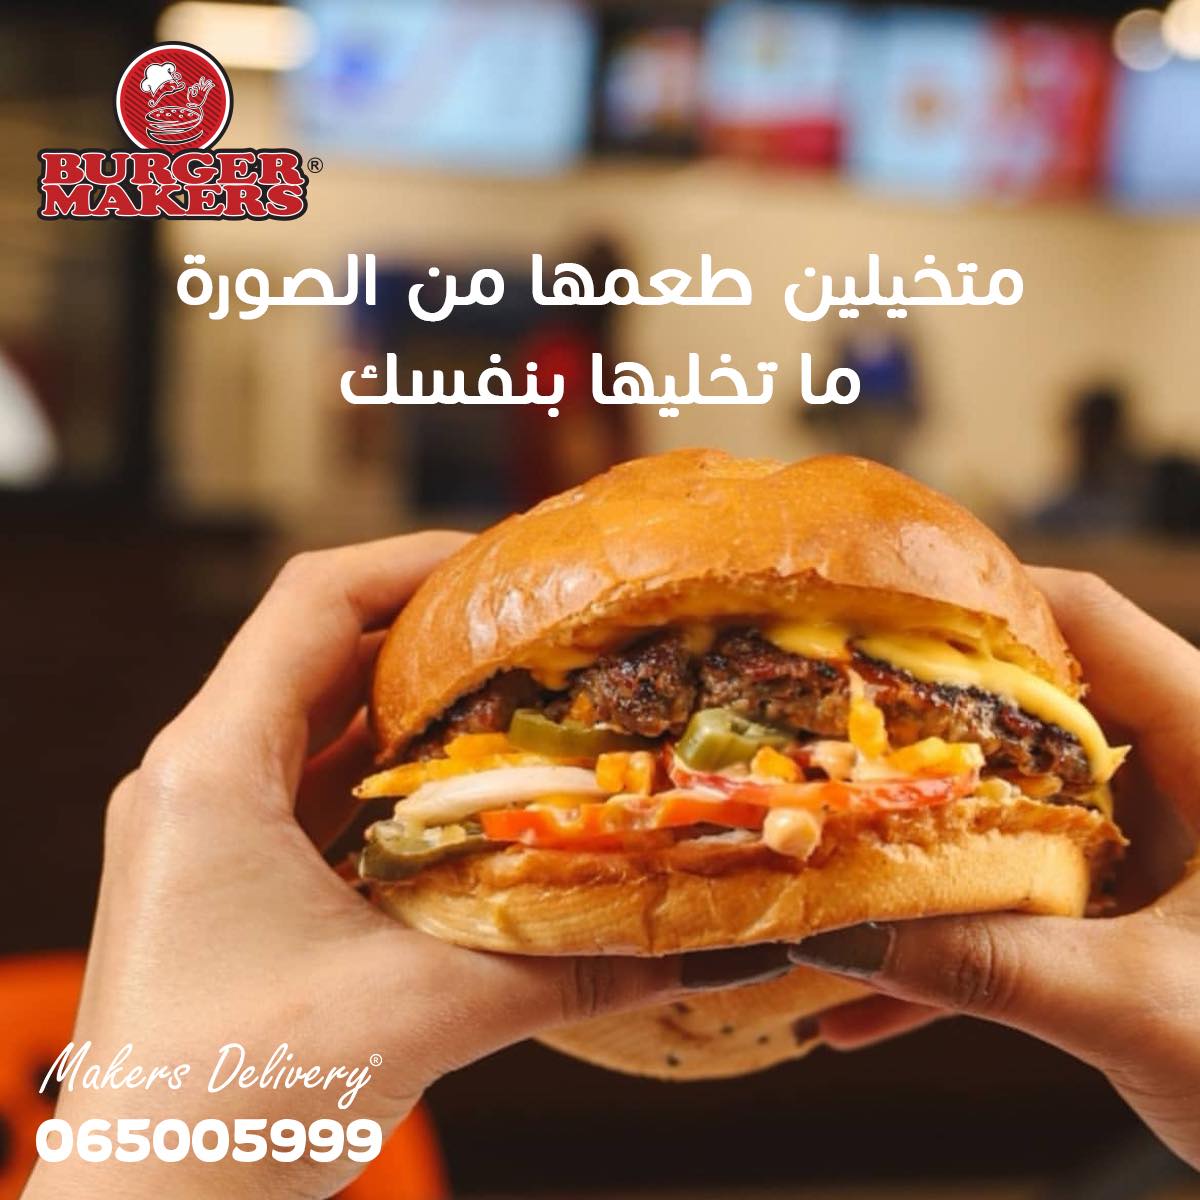 برجر ميكرز Burger Makers - افضل مطاعم برجر في عمان, الاردن